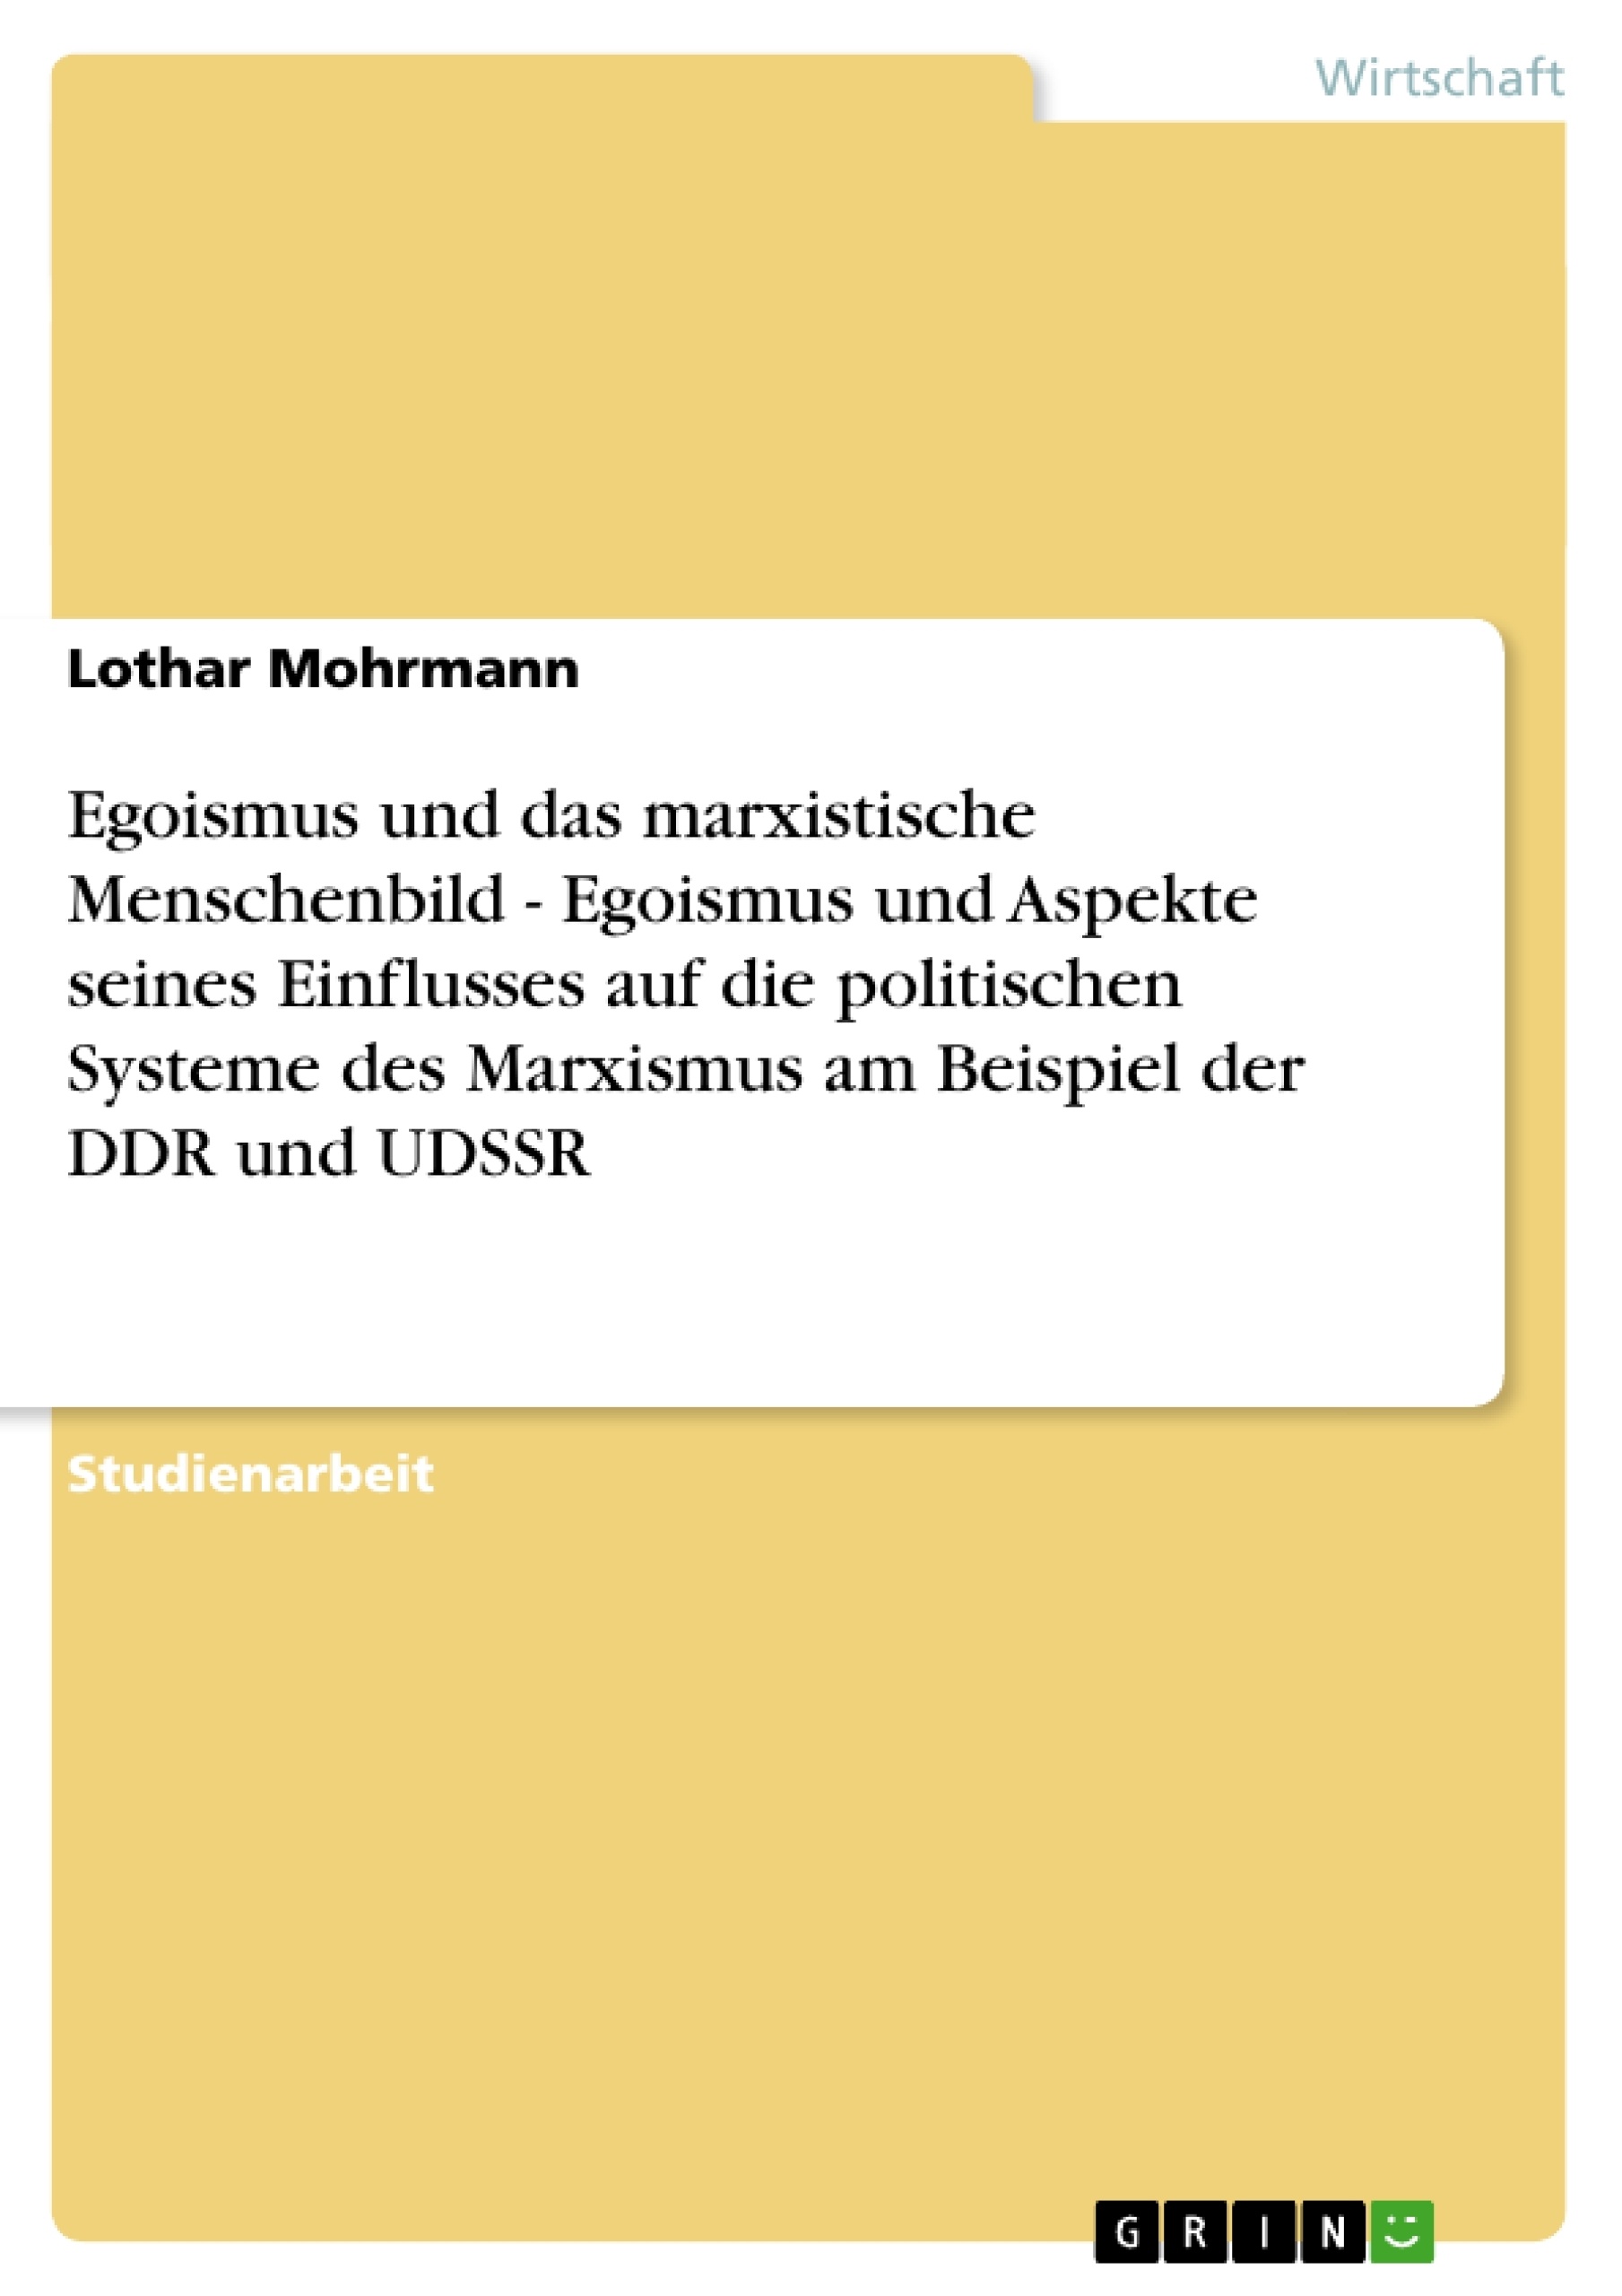 Titel: Egoismus und das marxistische Menschenbild - Egoismus und Aspekte seines Einflusses auf die politischen Systeme des Marxismus am Beispiel der DDR und UDSSR